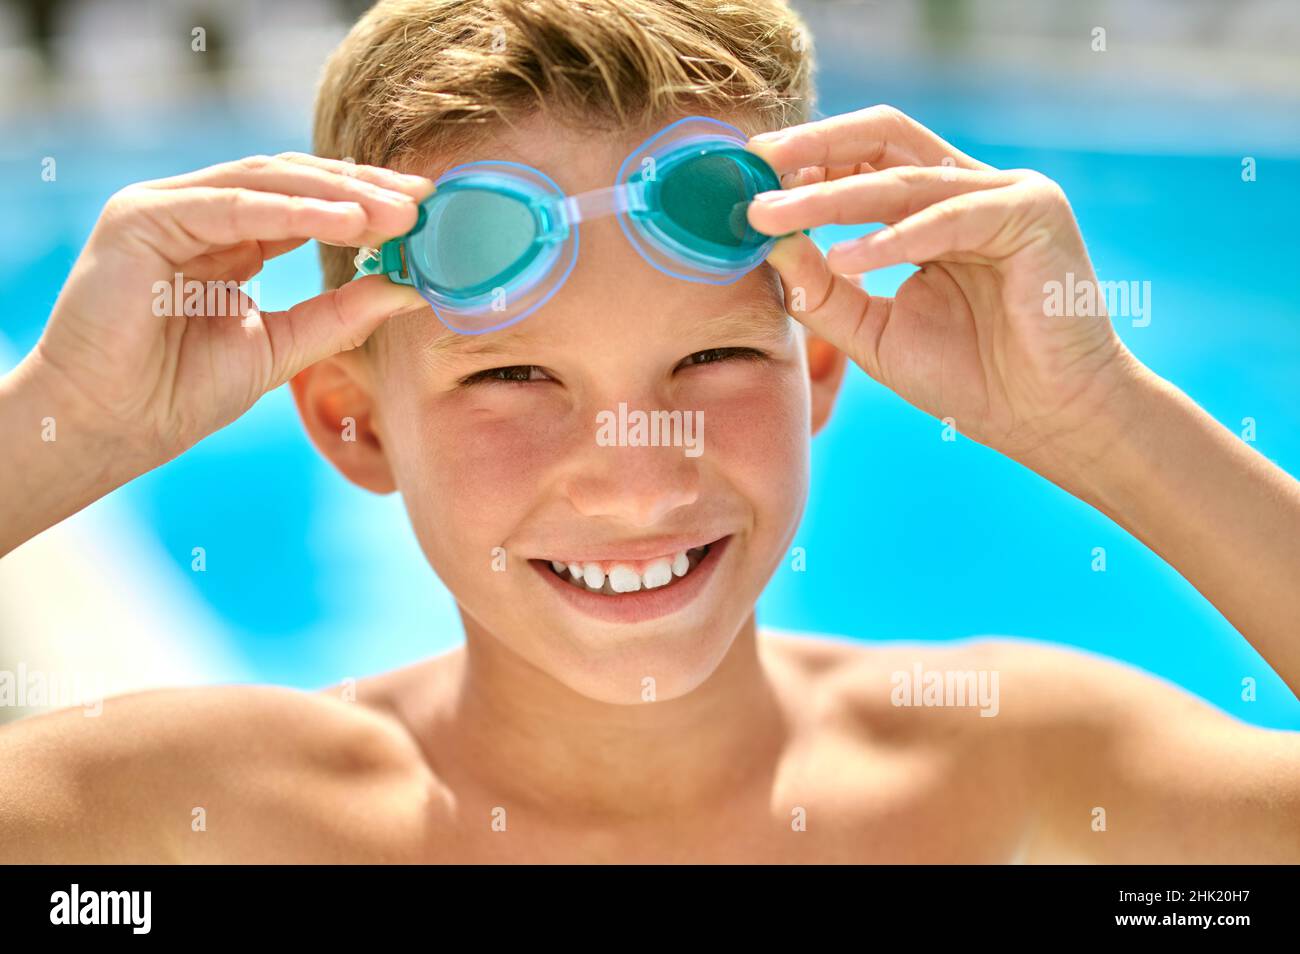 Gros plan sur le visage d'un garçon touchant des lunettes de natation Banque D'Images